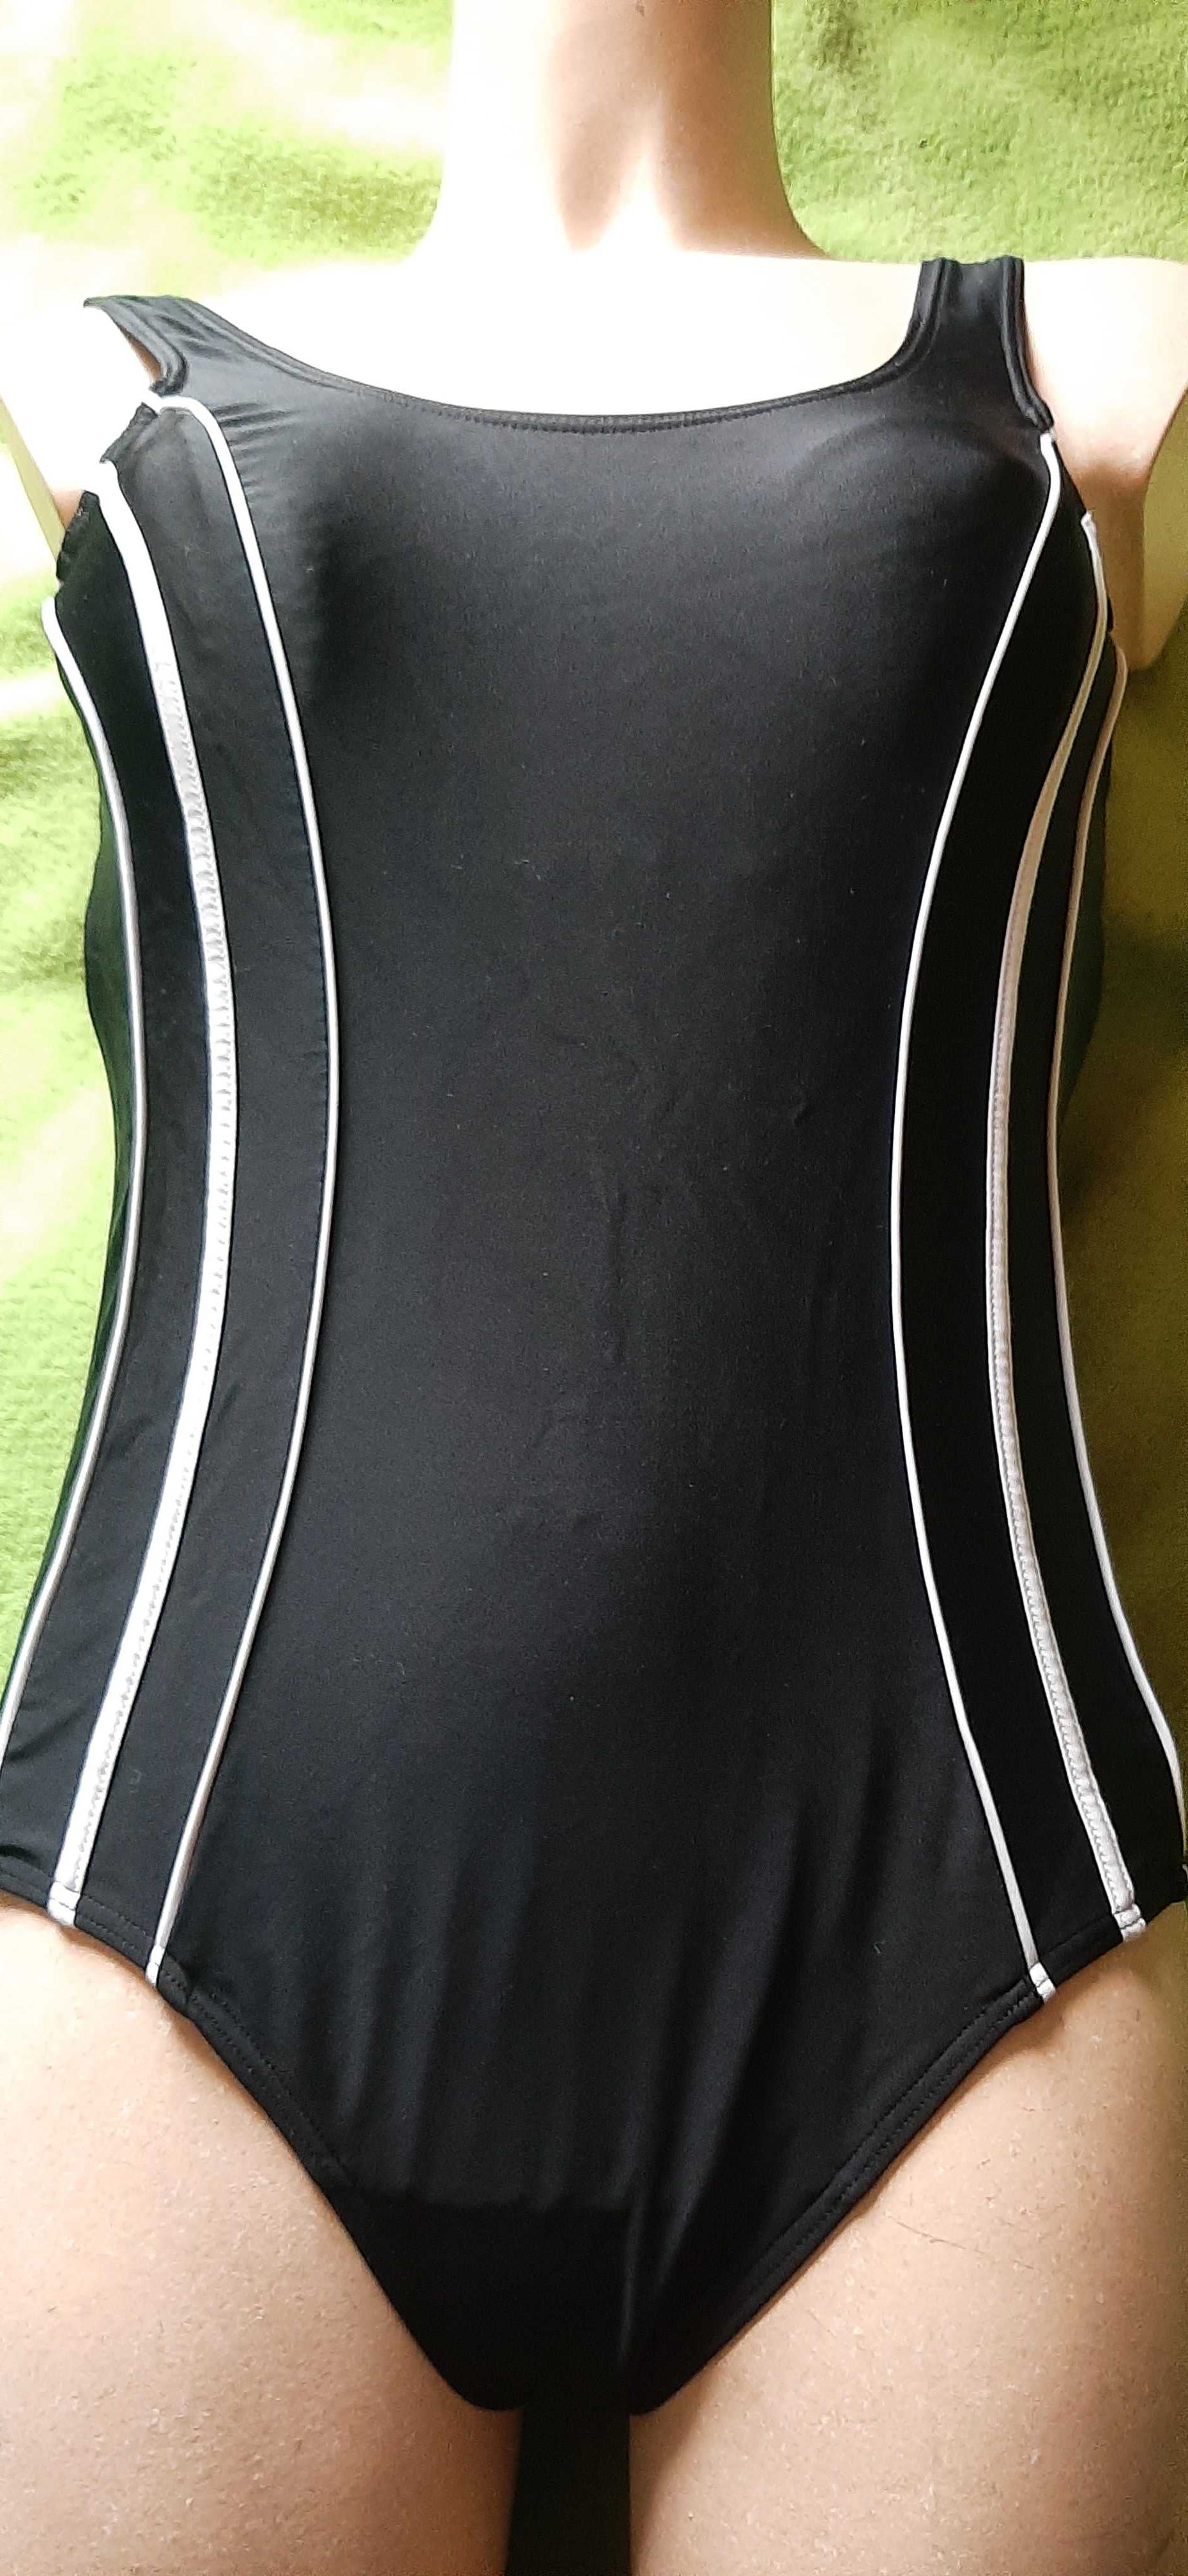 jednoczęściowy strój kąpielowy wyszczuplający rozmiar 40